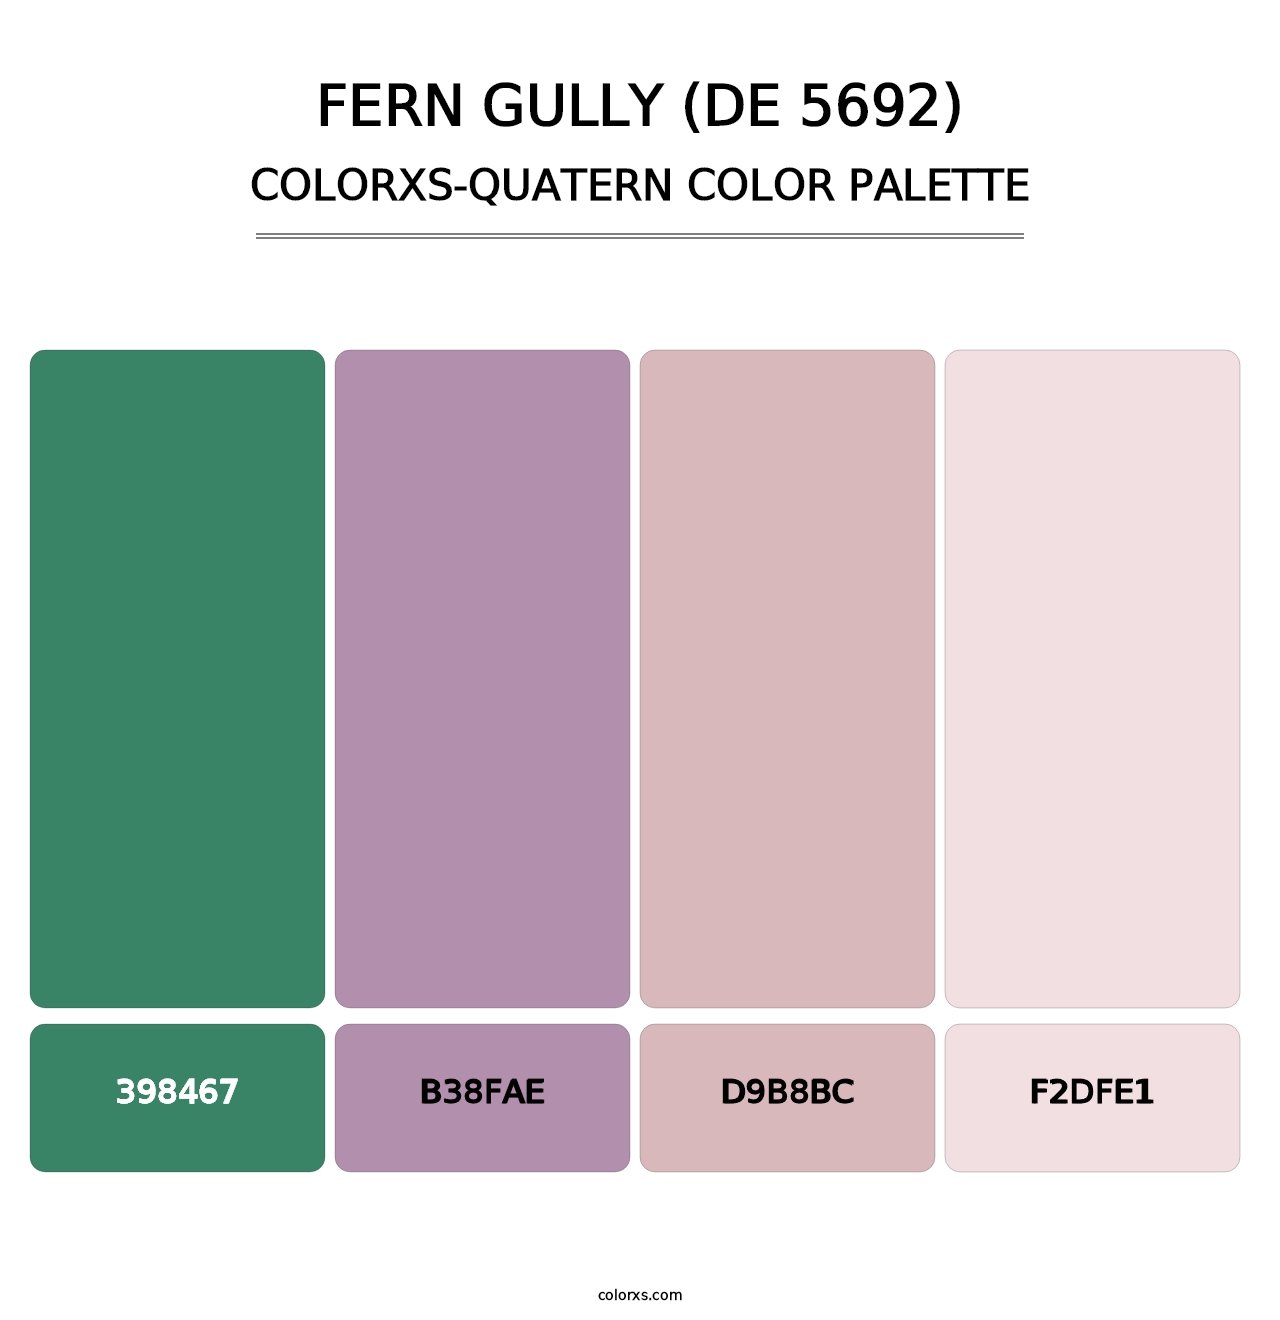 Fern Gully (DE 5692) - Colorxs Quatern Palette